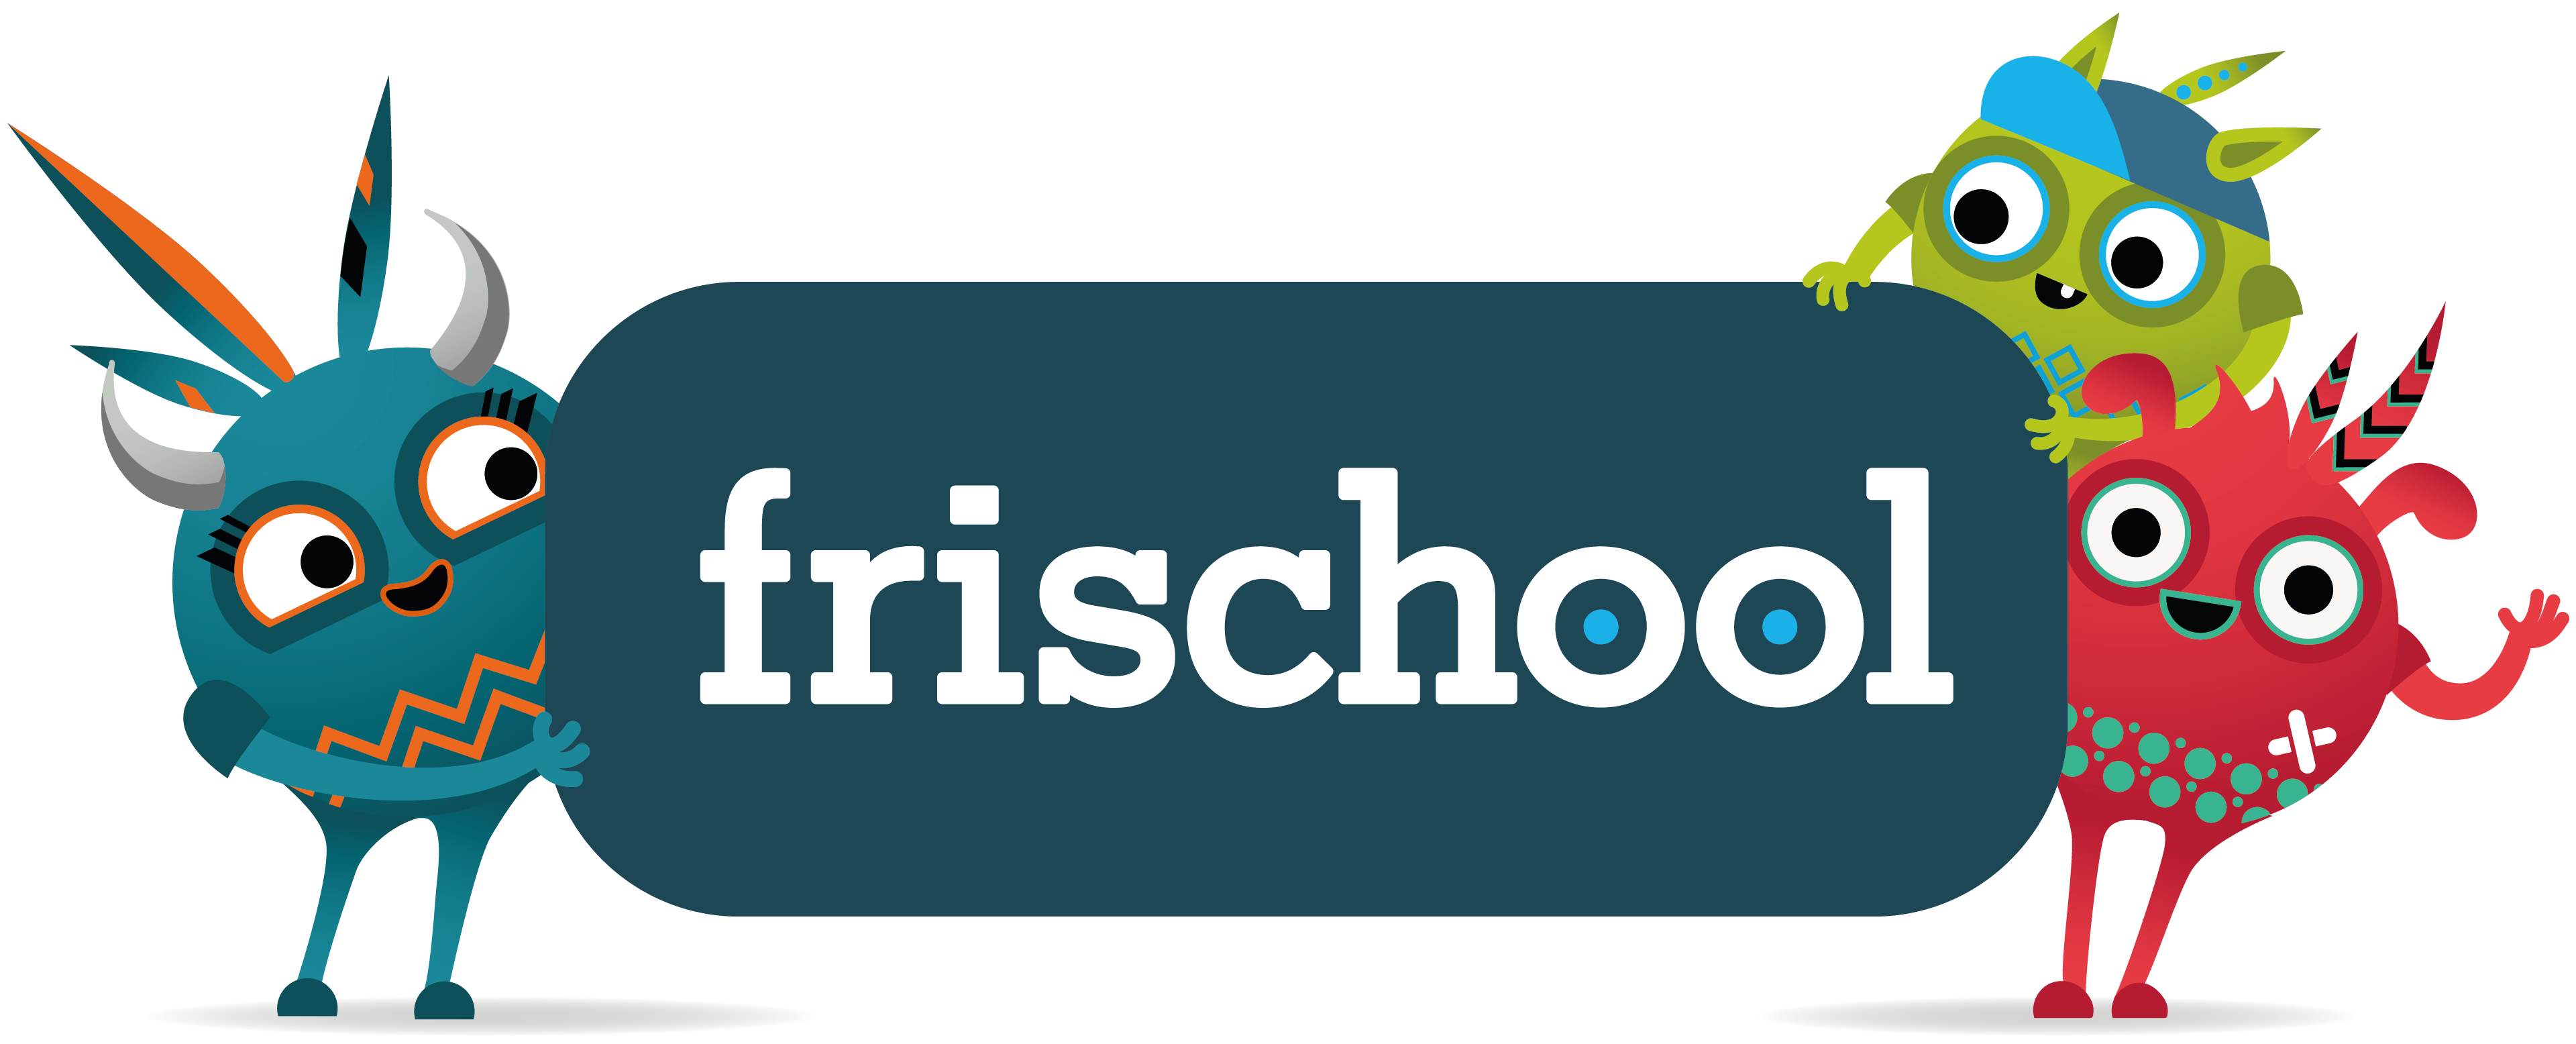 Logo frischool